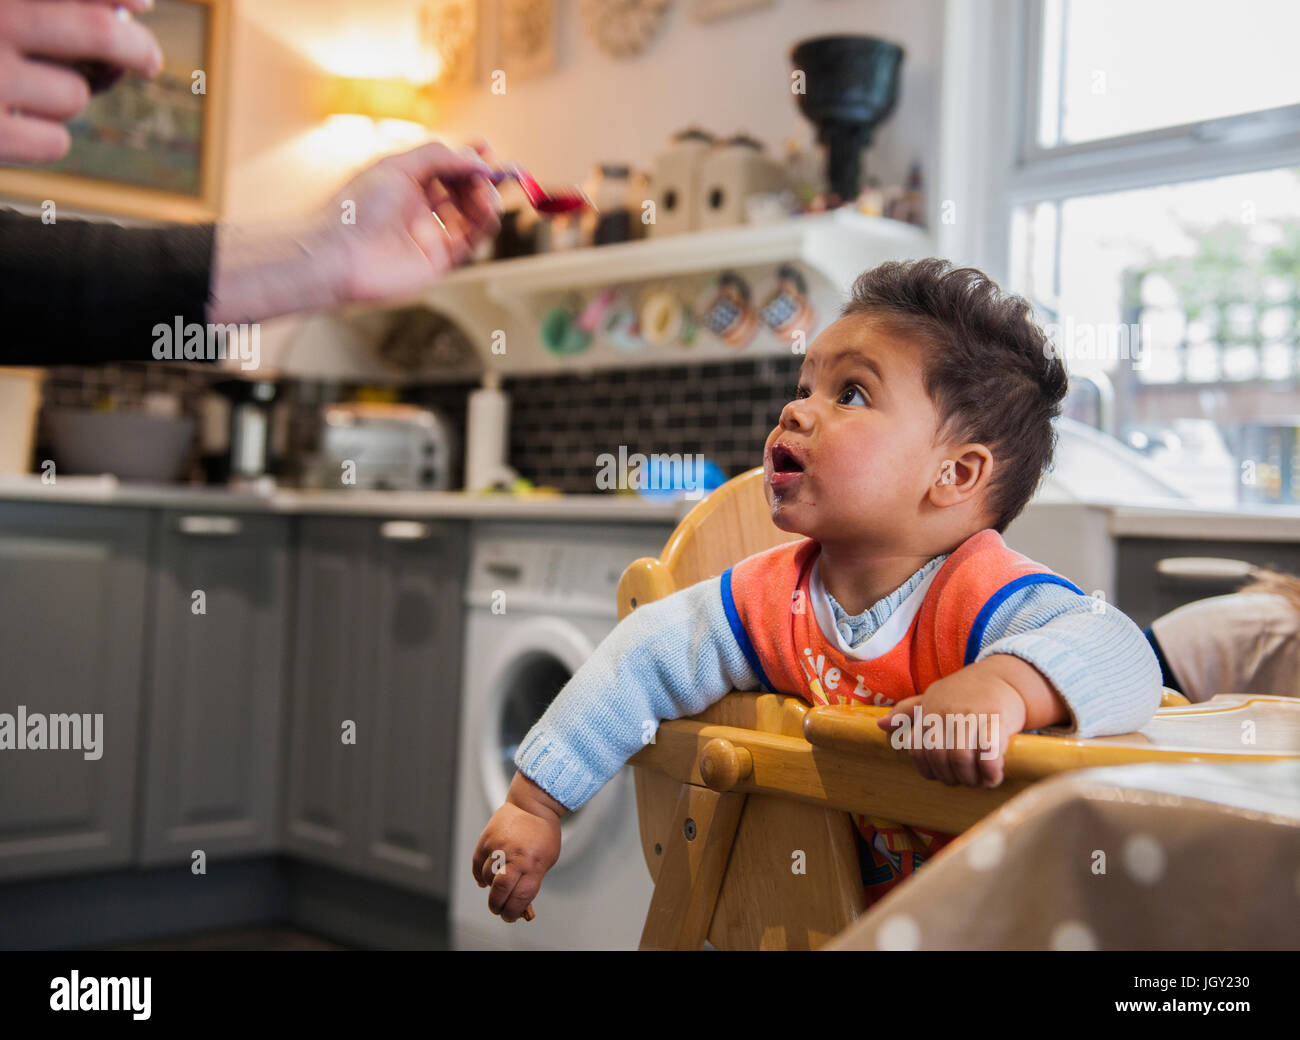 Baby boy nel seggiolone essendo alimentato Foto Stock